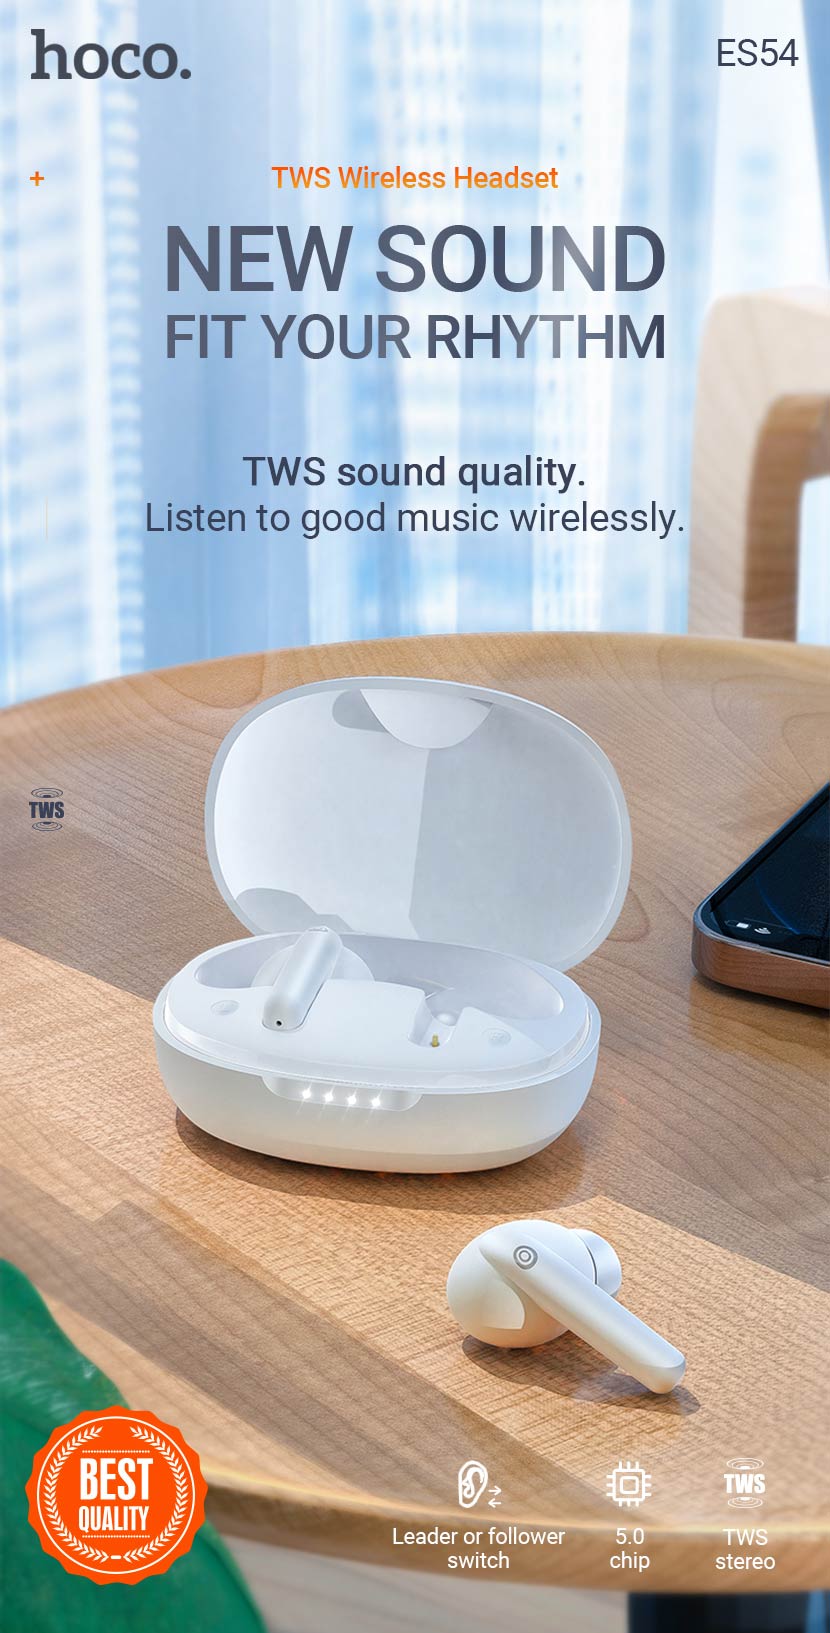 hoco news es54 gorgeous tws wireless headset en